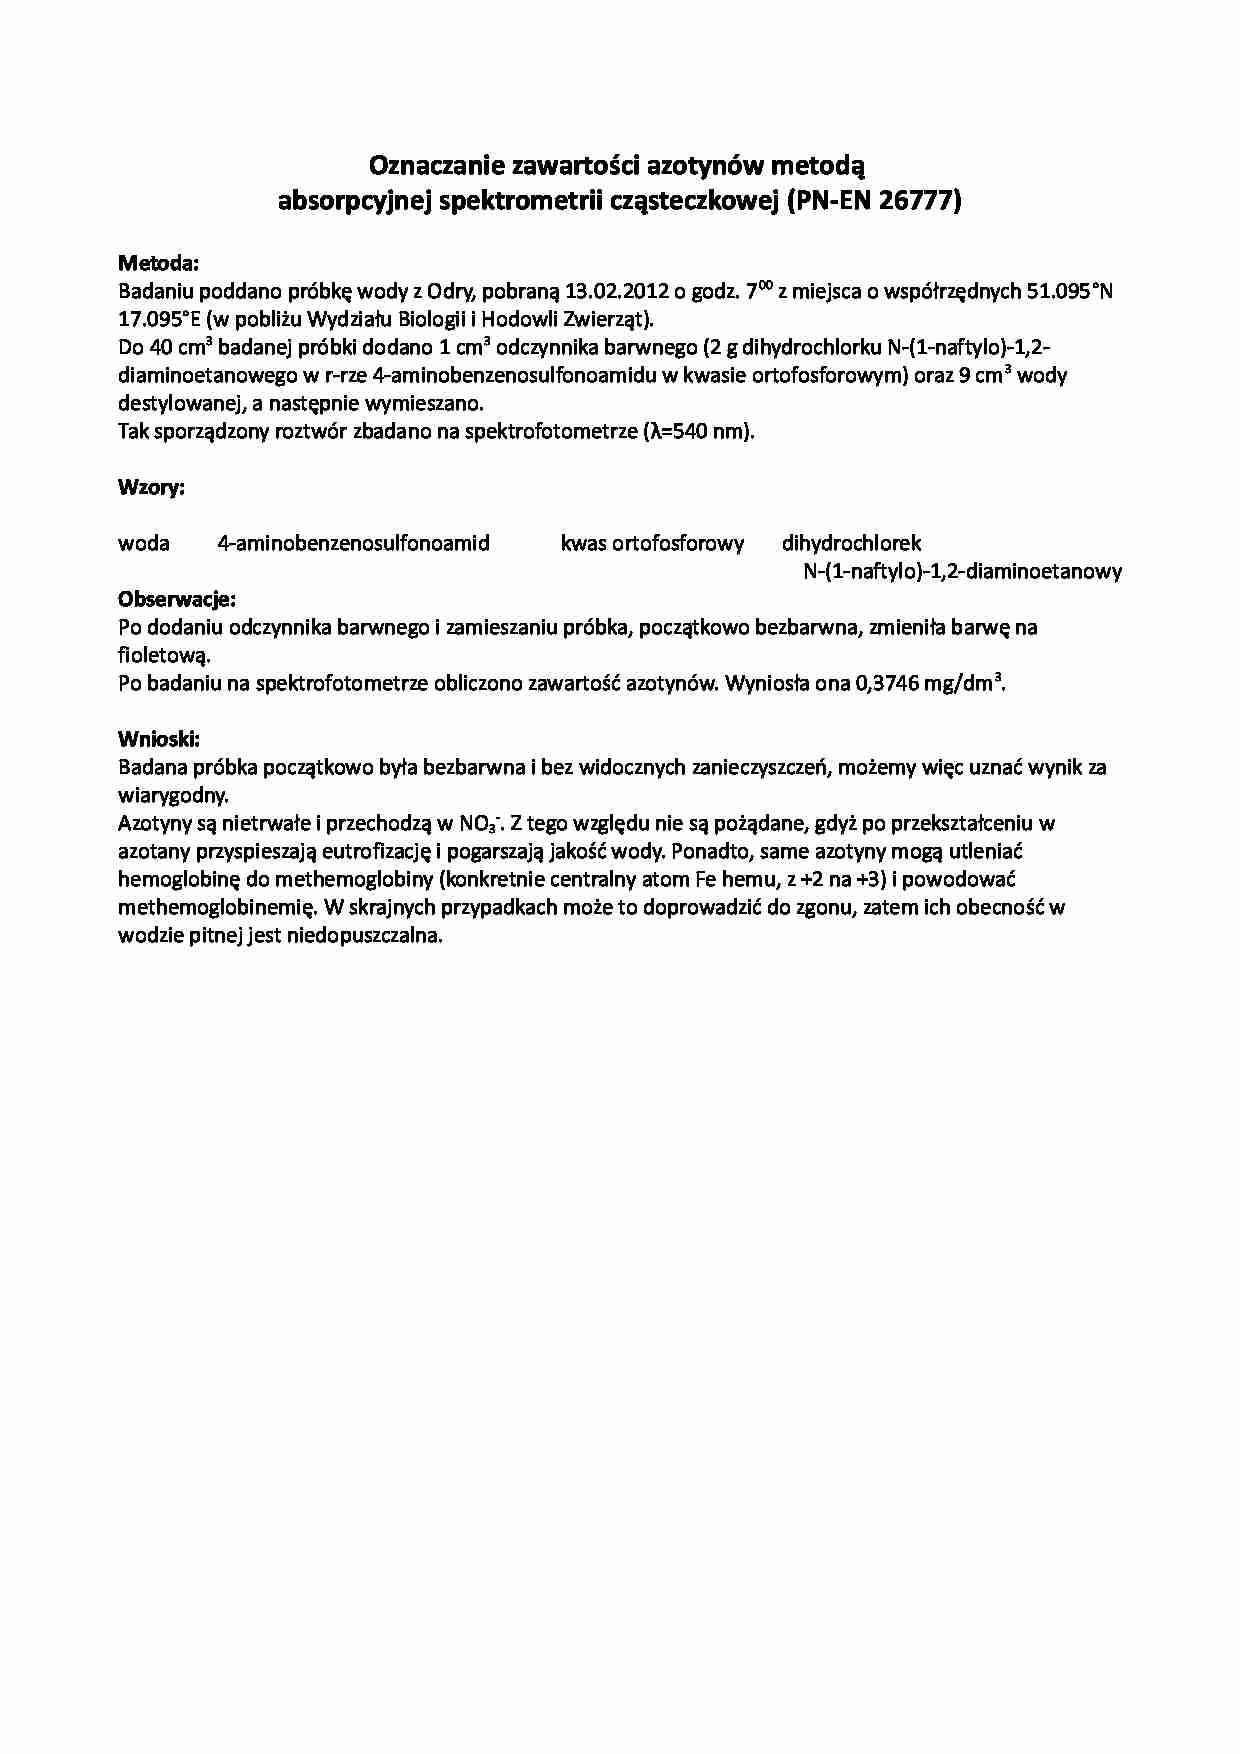 Oznaczenie zawartości azotynów - strona 1